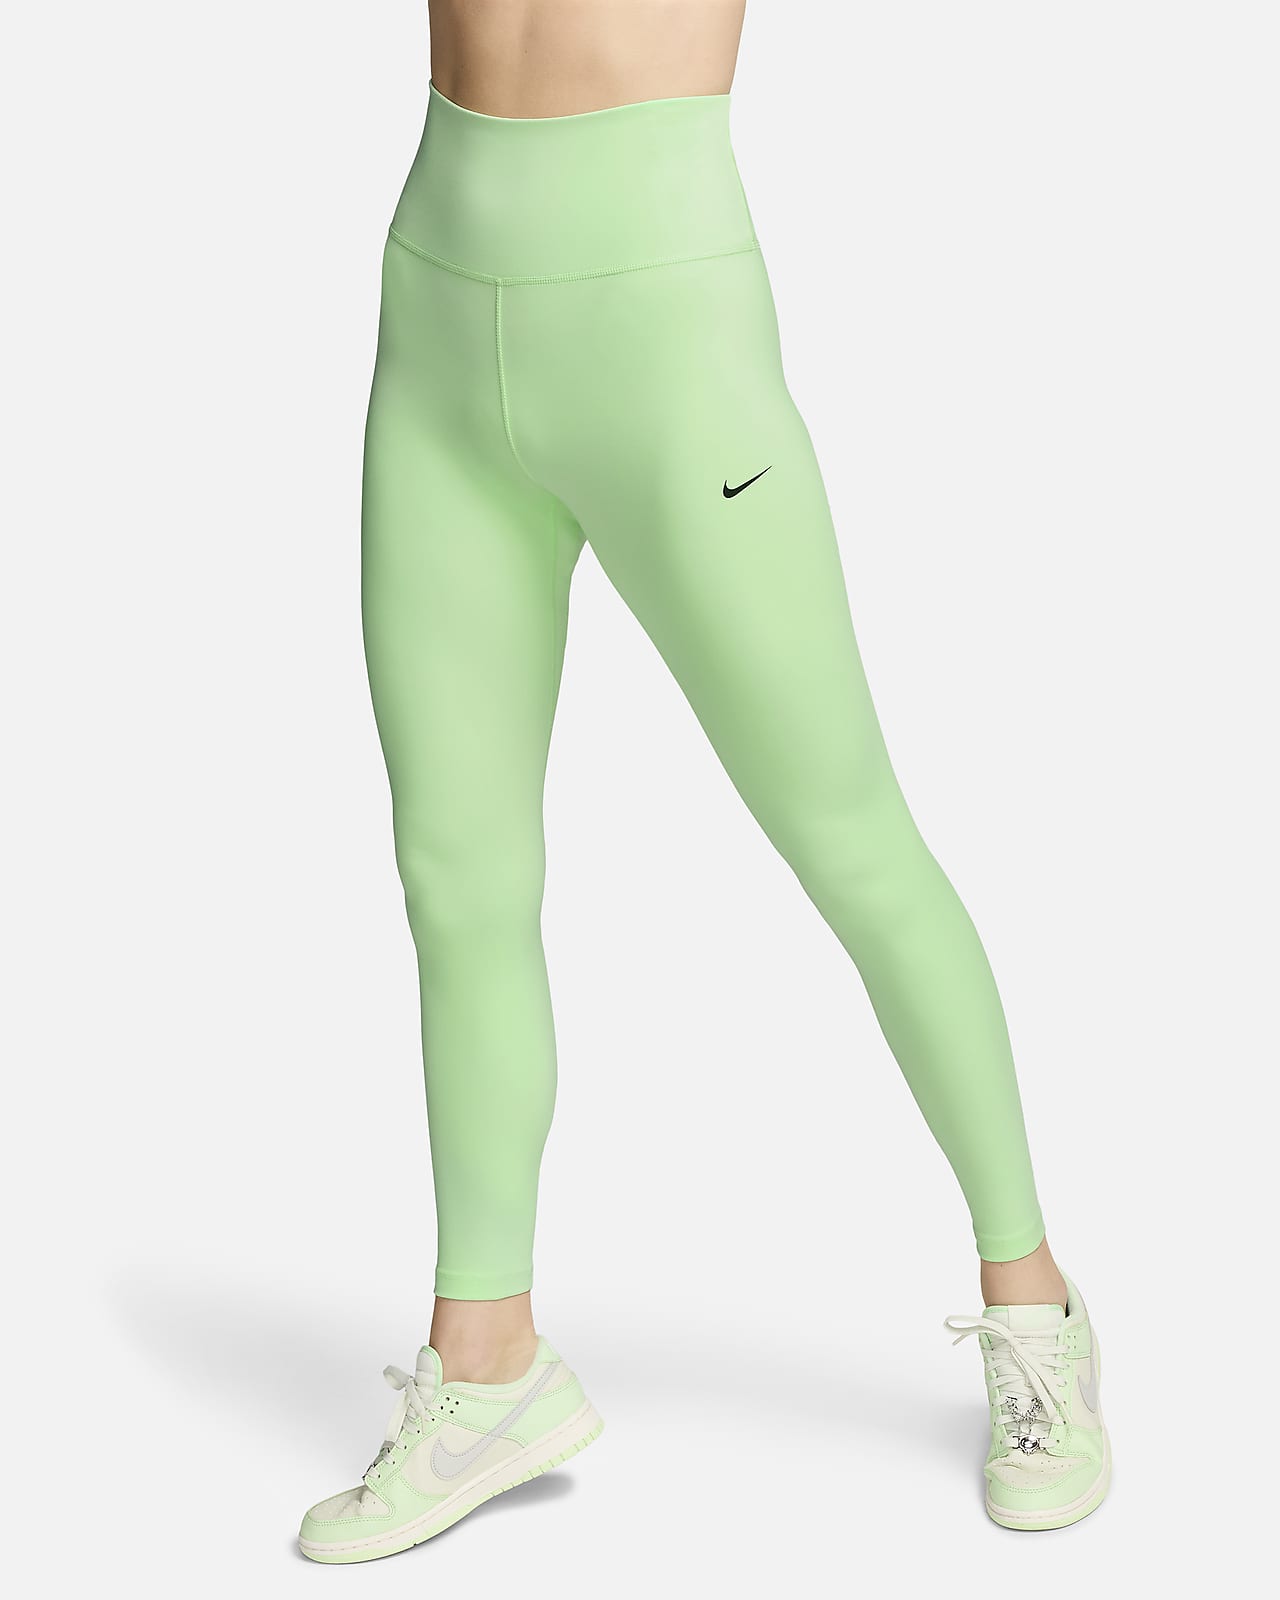 Legginsy Damskie Nike Pro Fitness Spodnie Sport Xs - Ceny i opinie